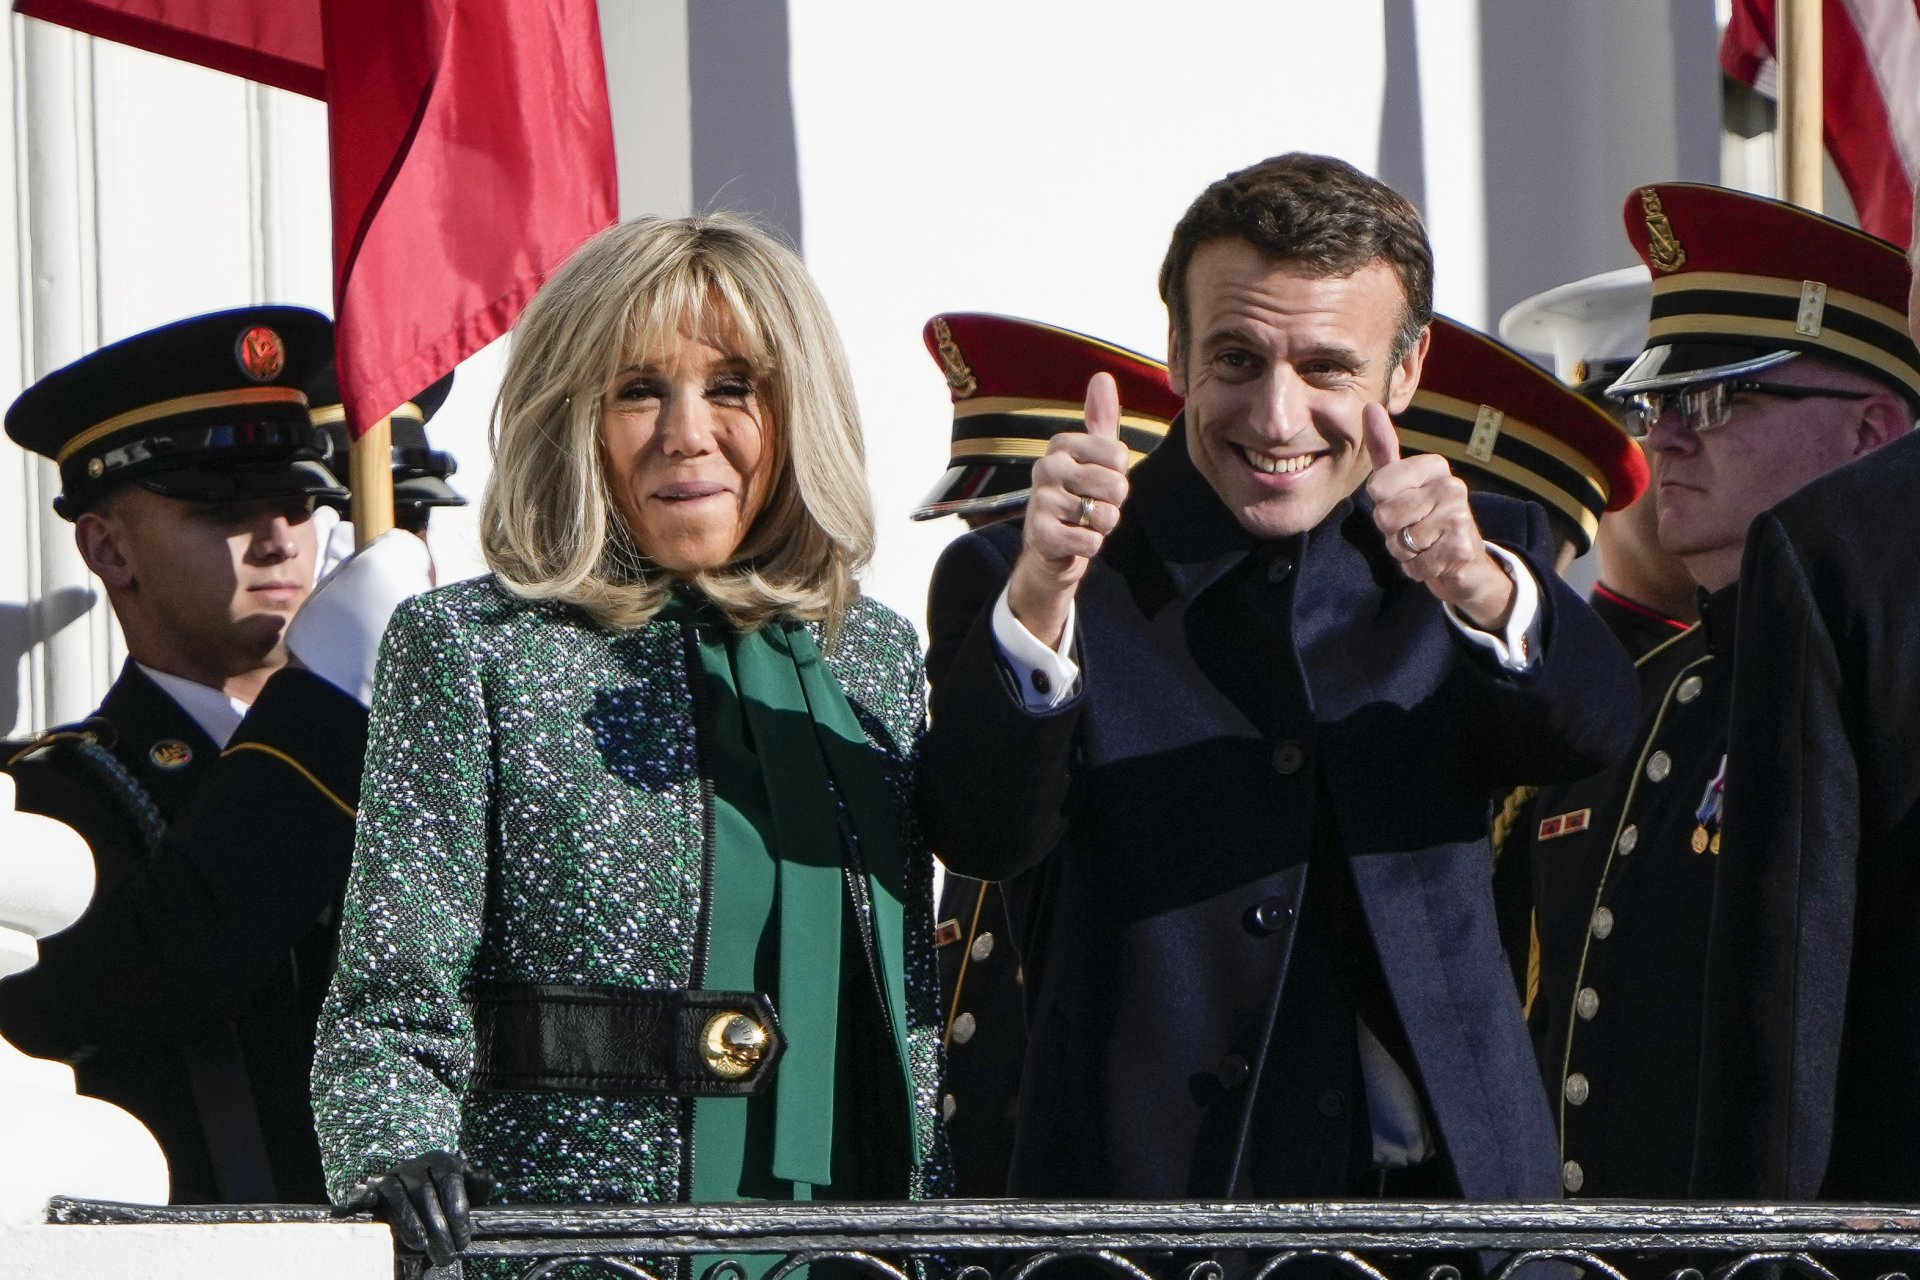  Френският президент Еманюел Макрон и съпругата му Брижит Макрон поздравяват тълпата на Южната морава на Белия дом по време на официално държавно посещение на 01 декември 2022 г. във Вашингтон